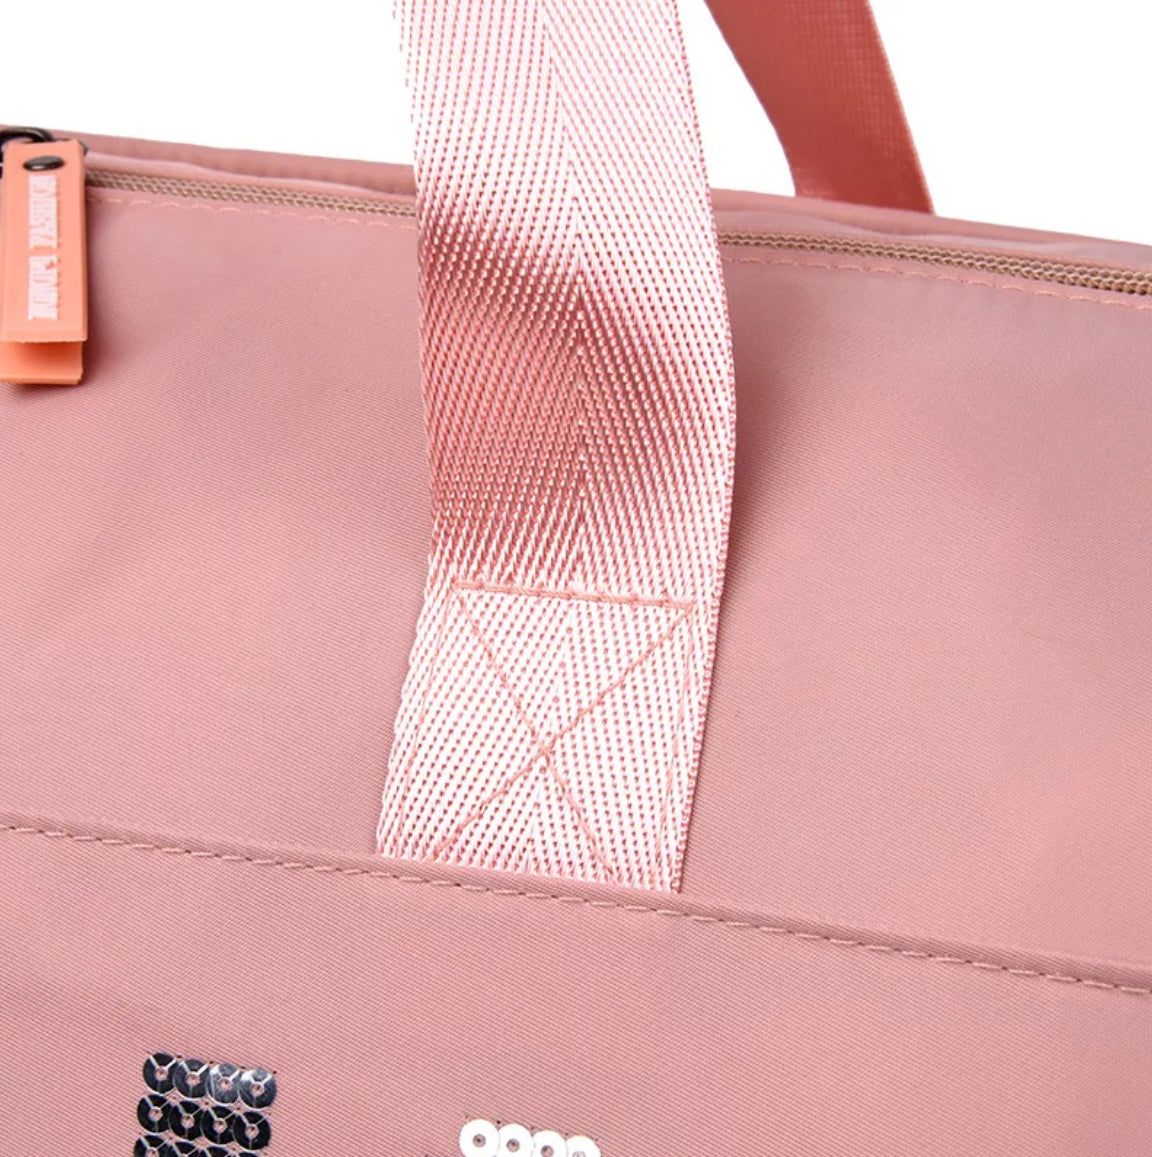 Pink Duffel Bag | Fitness Shoulder Bag For Women